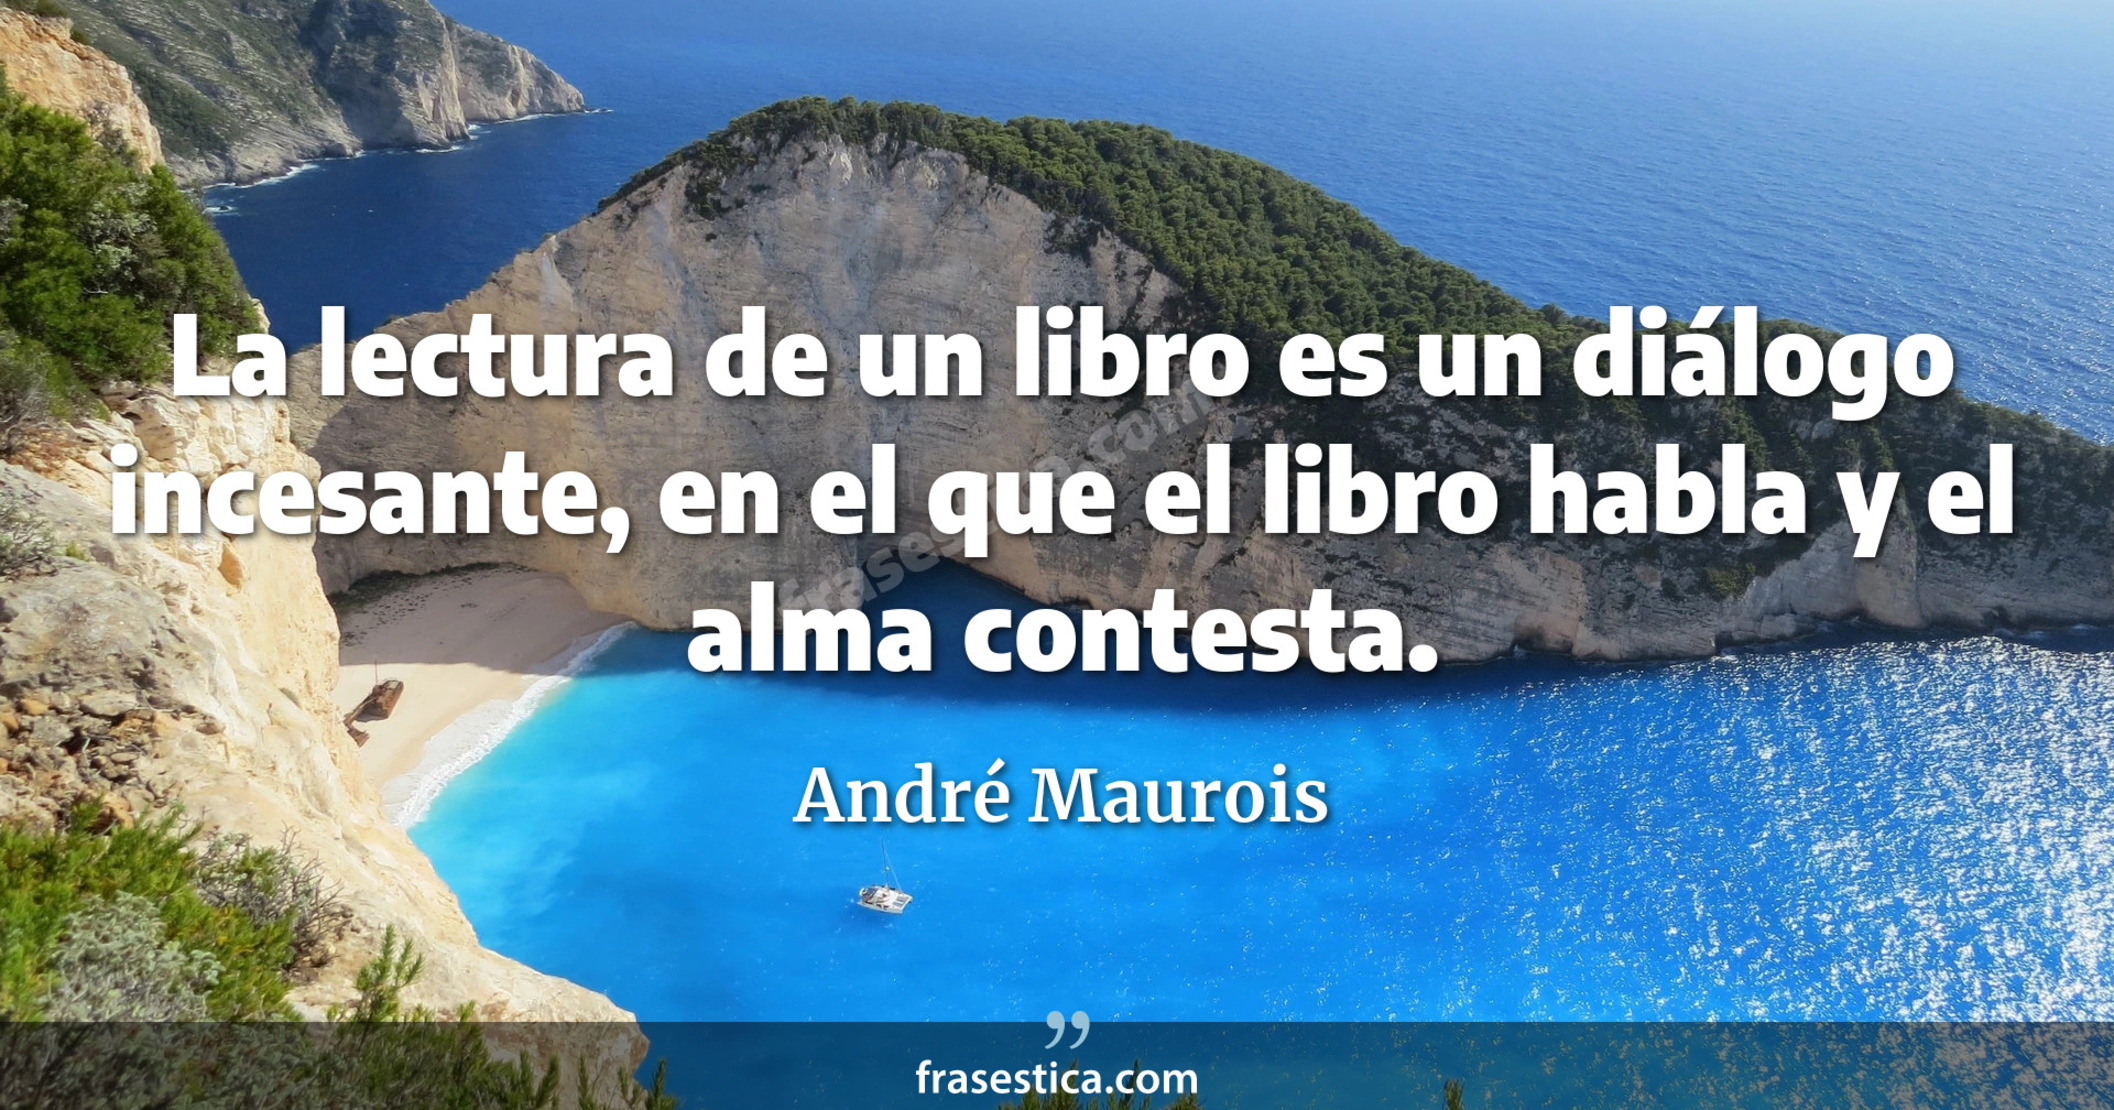 La lectura de un libro es un diálogo incesante, en el que el libro habla y el alma contesta. - André Maurois